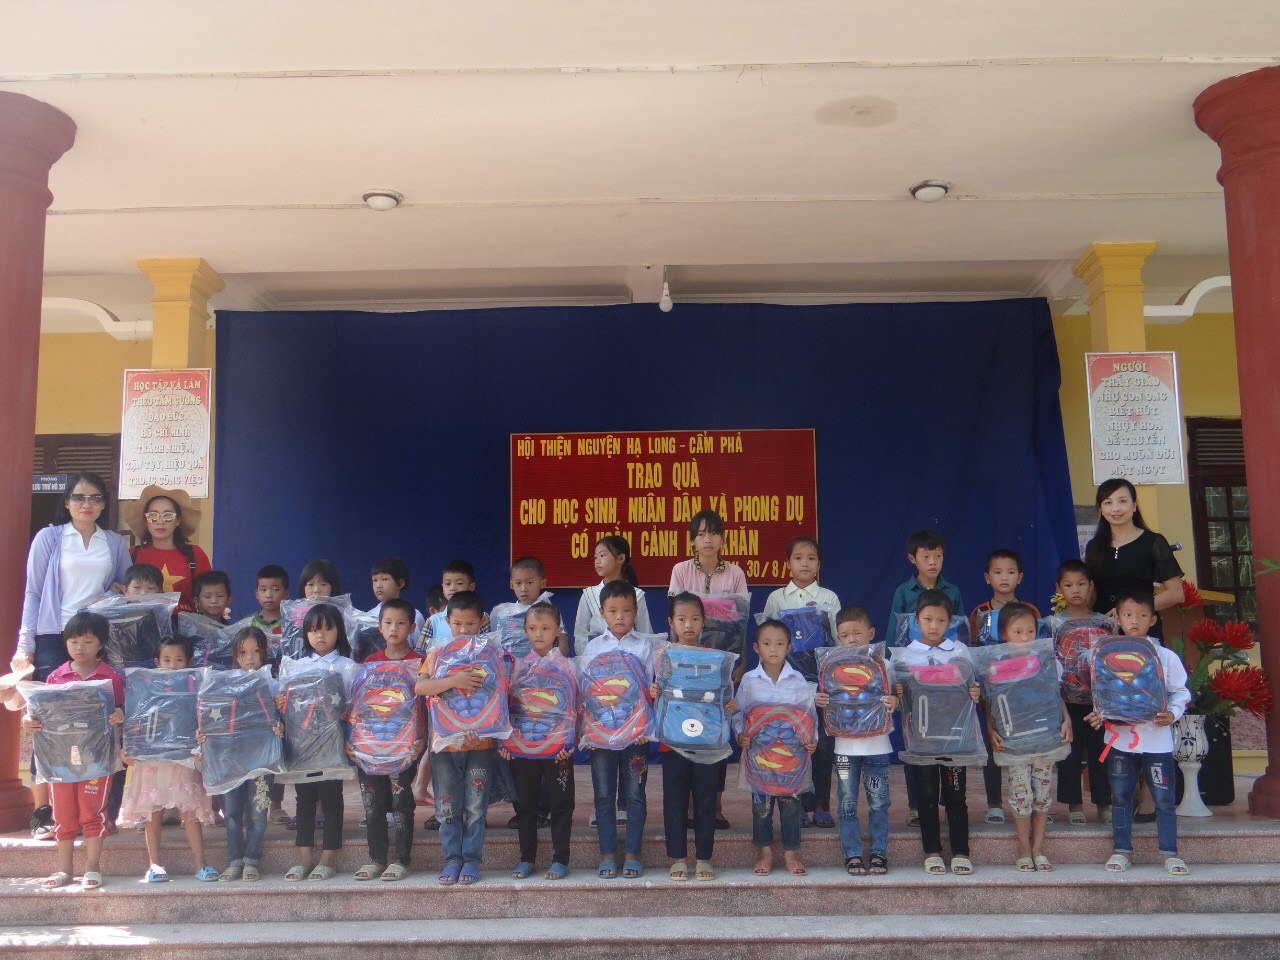 Đoàn thiện nguyện trao tặng cặp, sách cho các em học sinh vùng cao Phong Dụ, huyện Tiên Yên